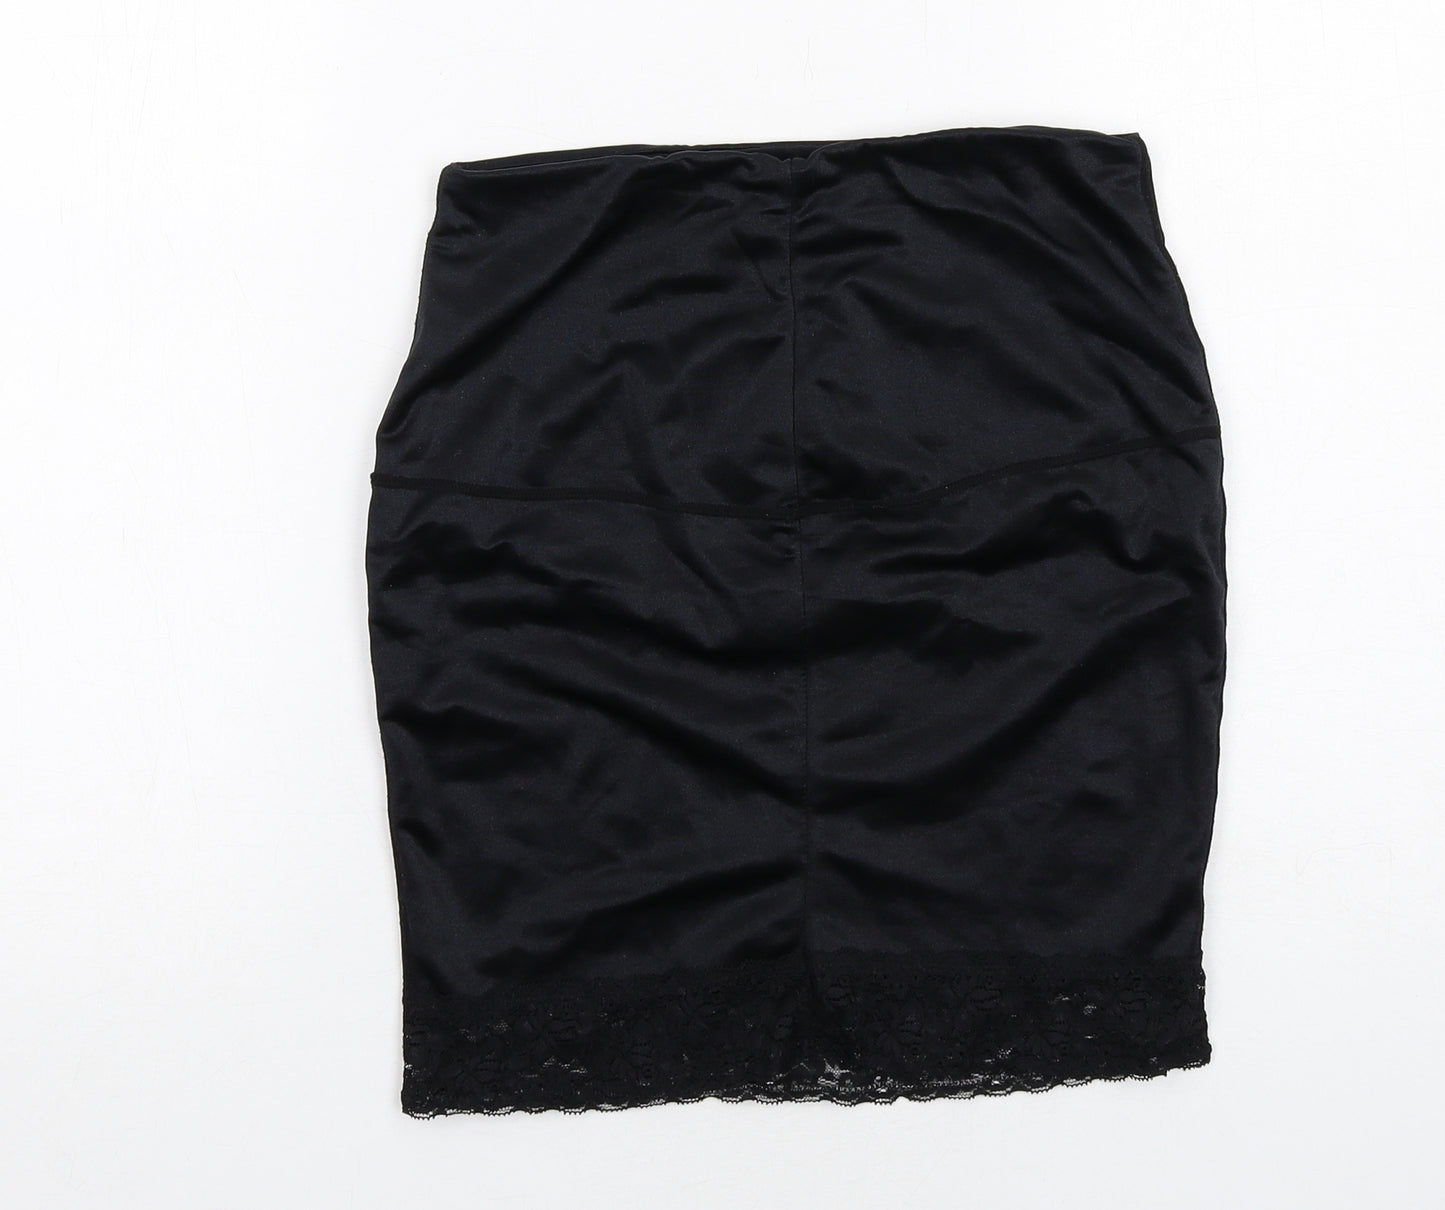 M&Co Womens Black Nylon Pettiskirt Skirt Size 16